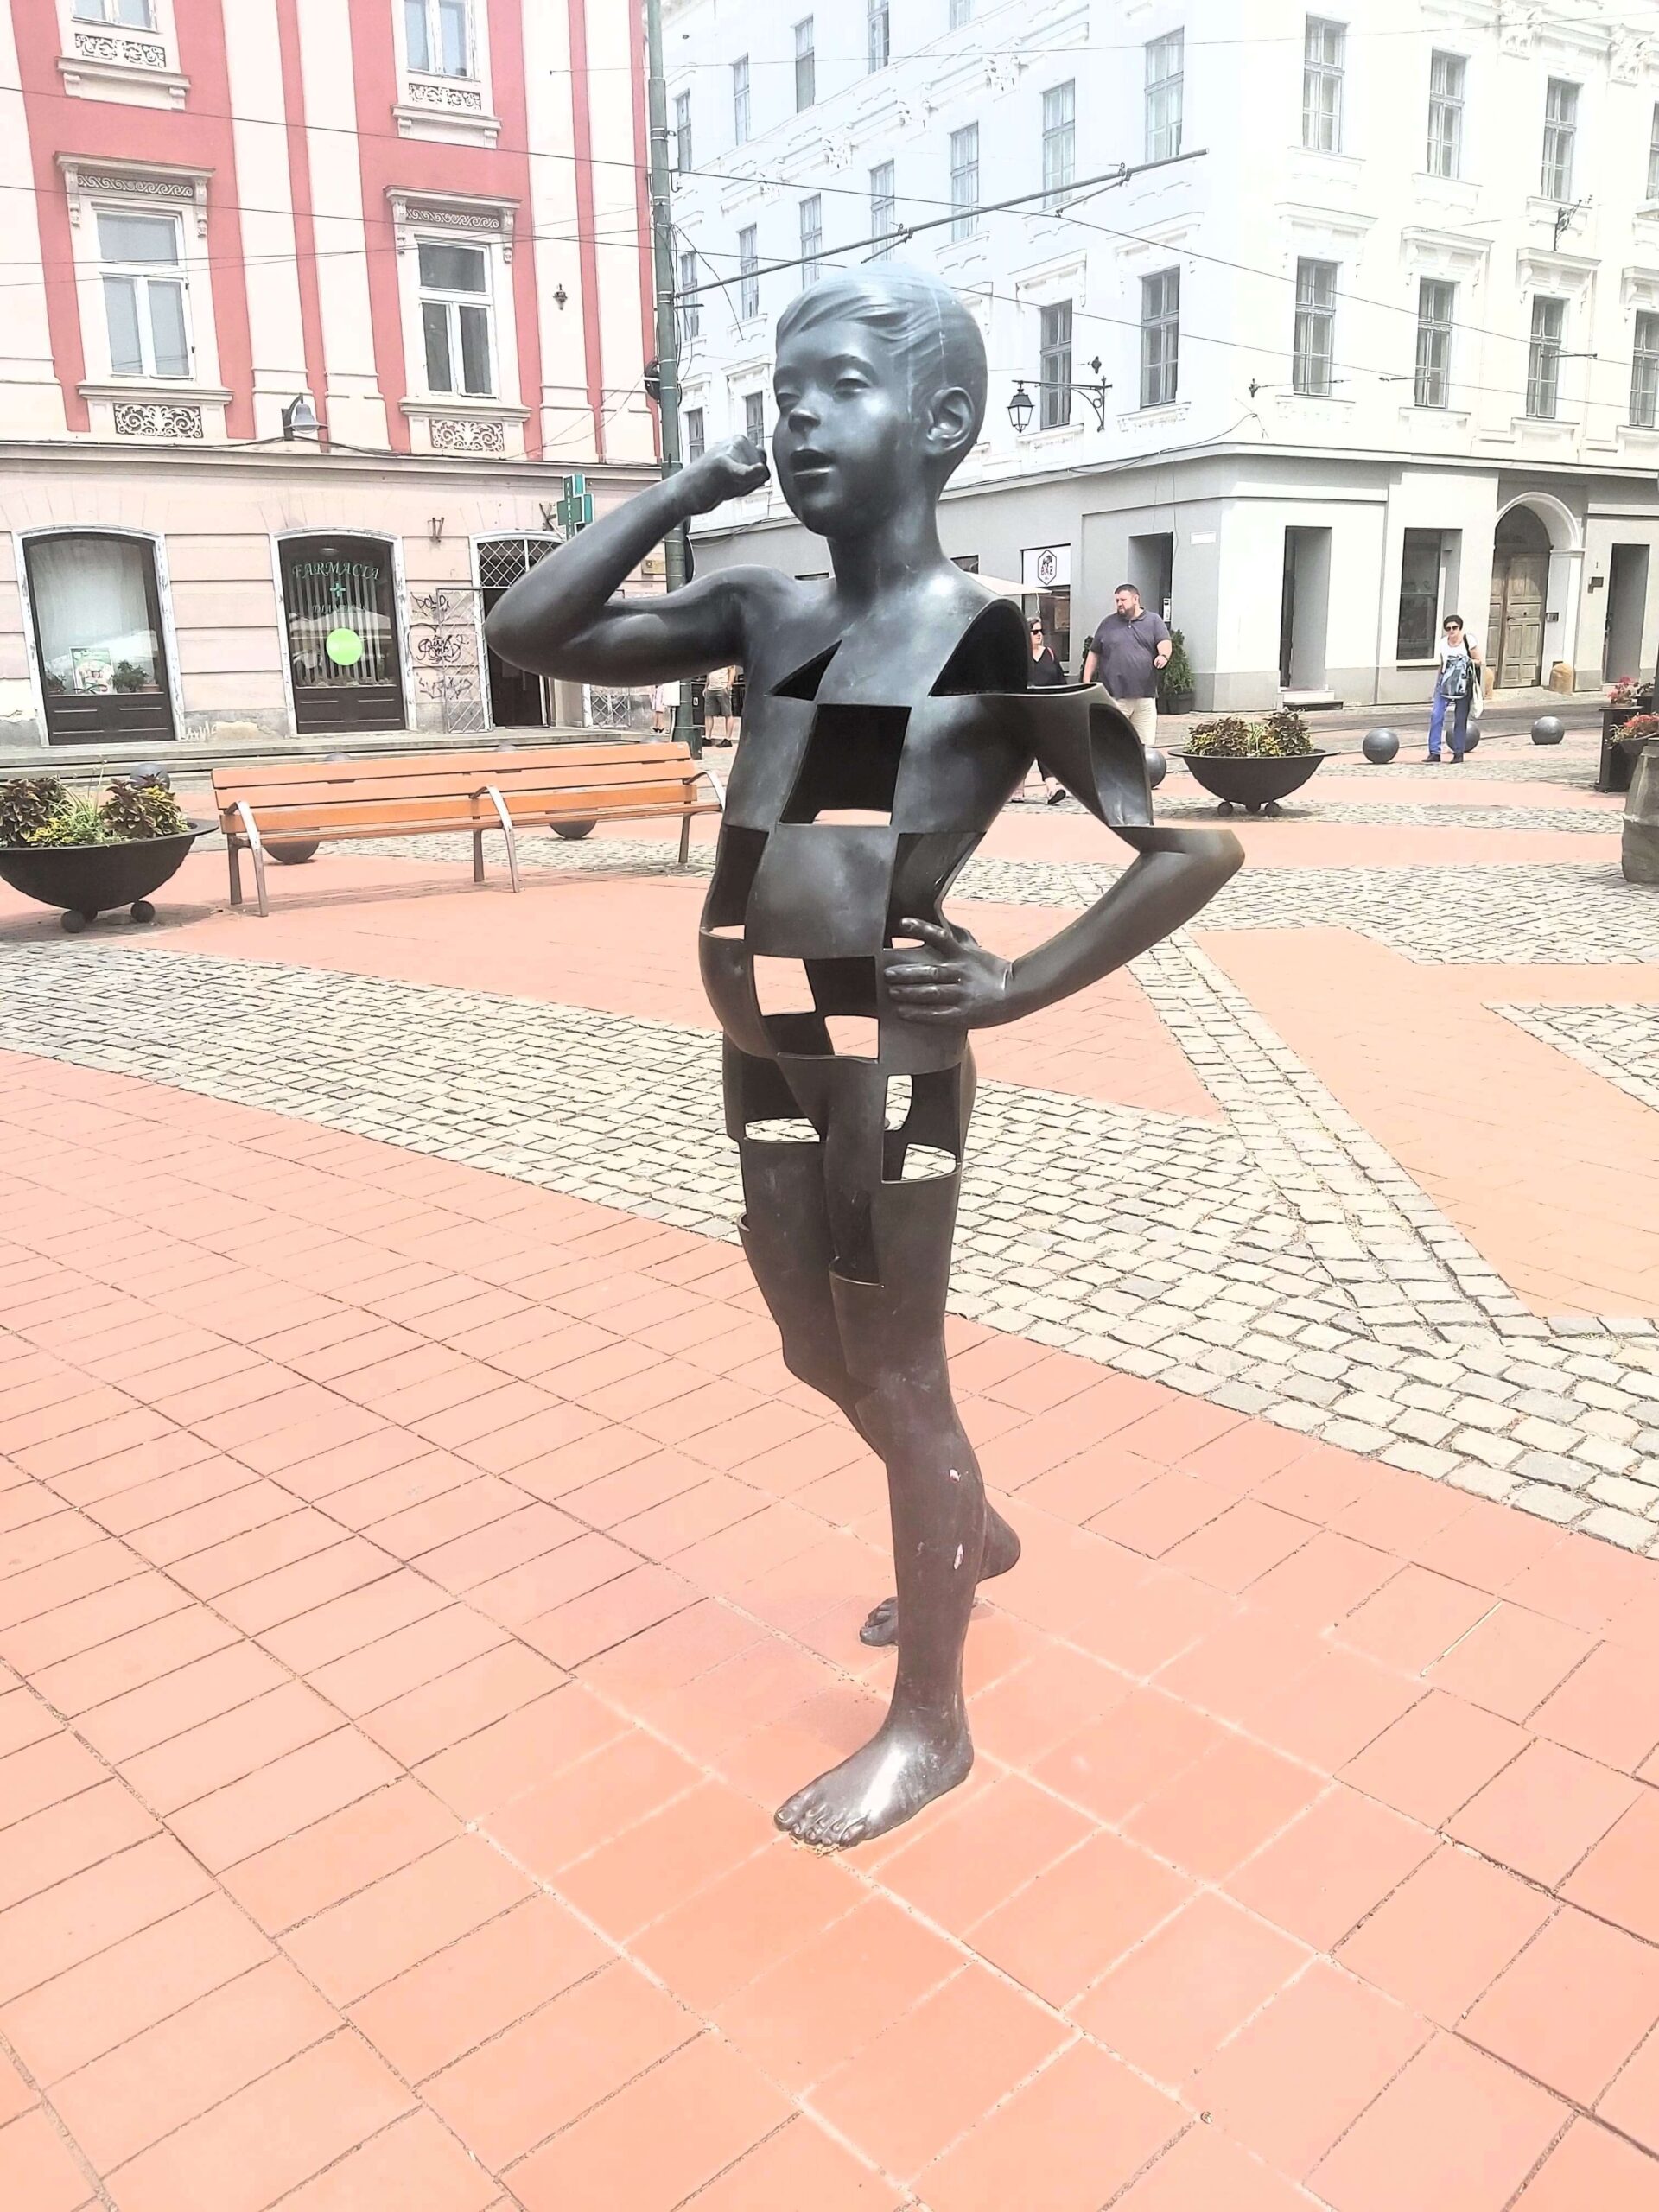 Boy statue in Timisoara, Romania